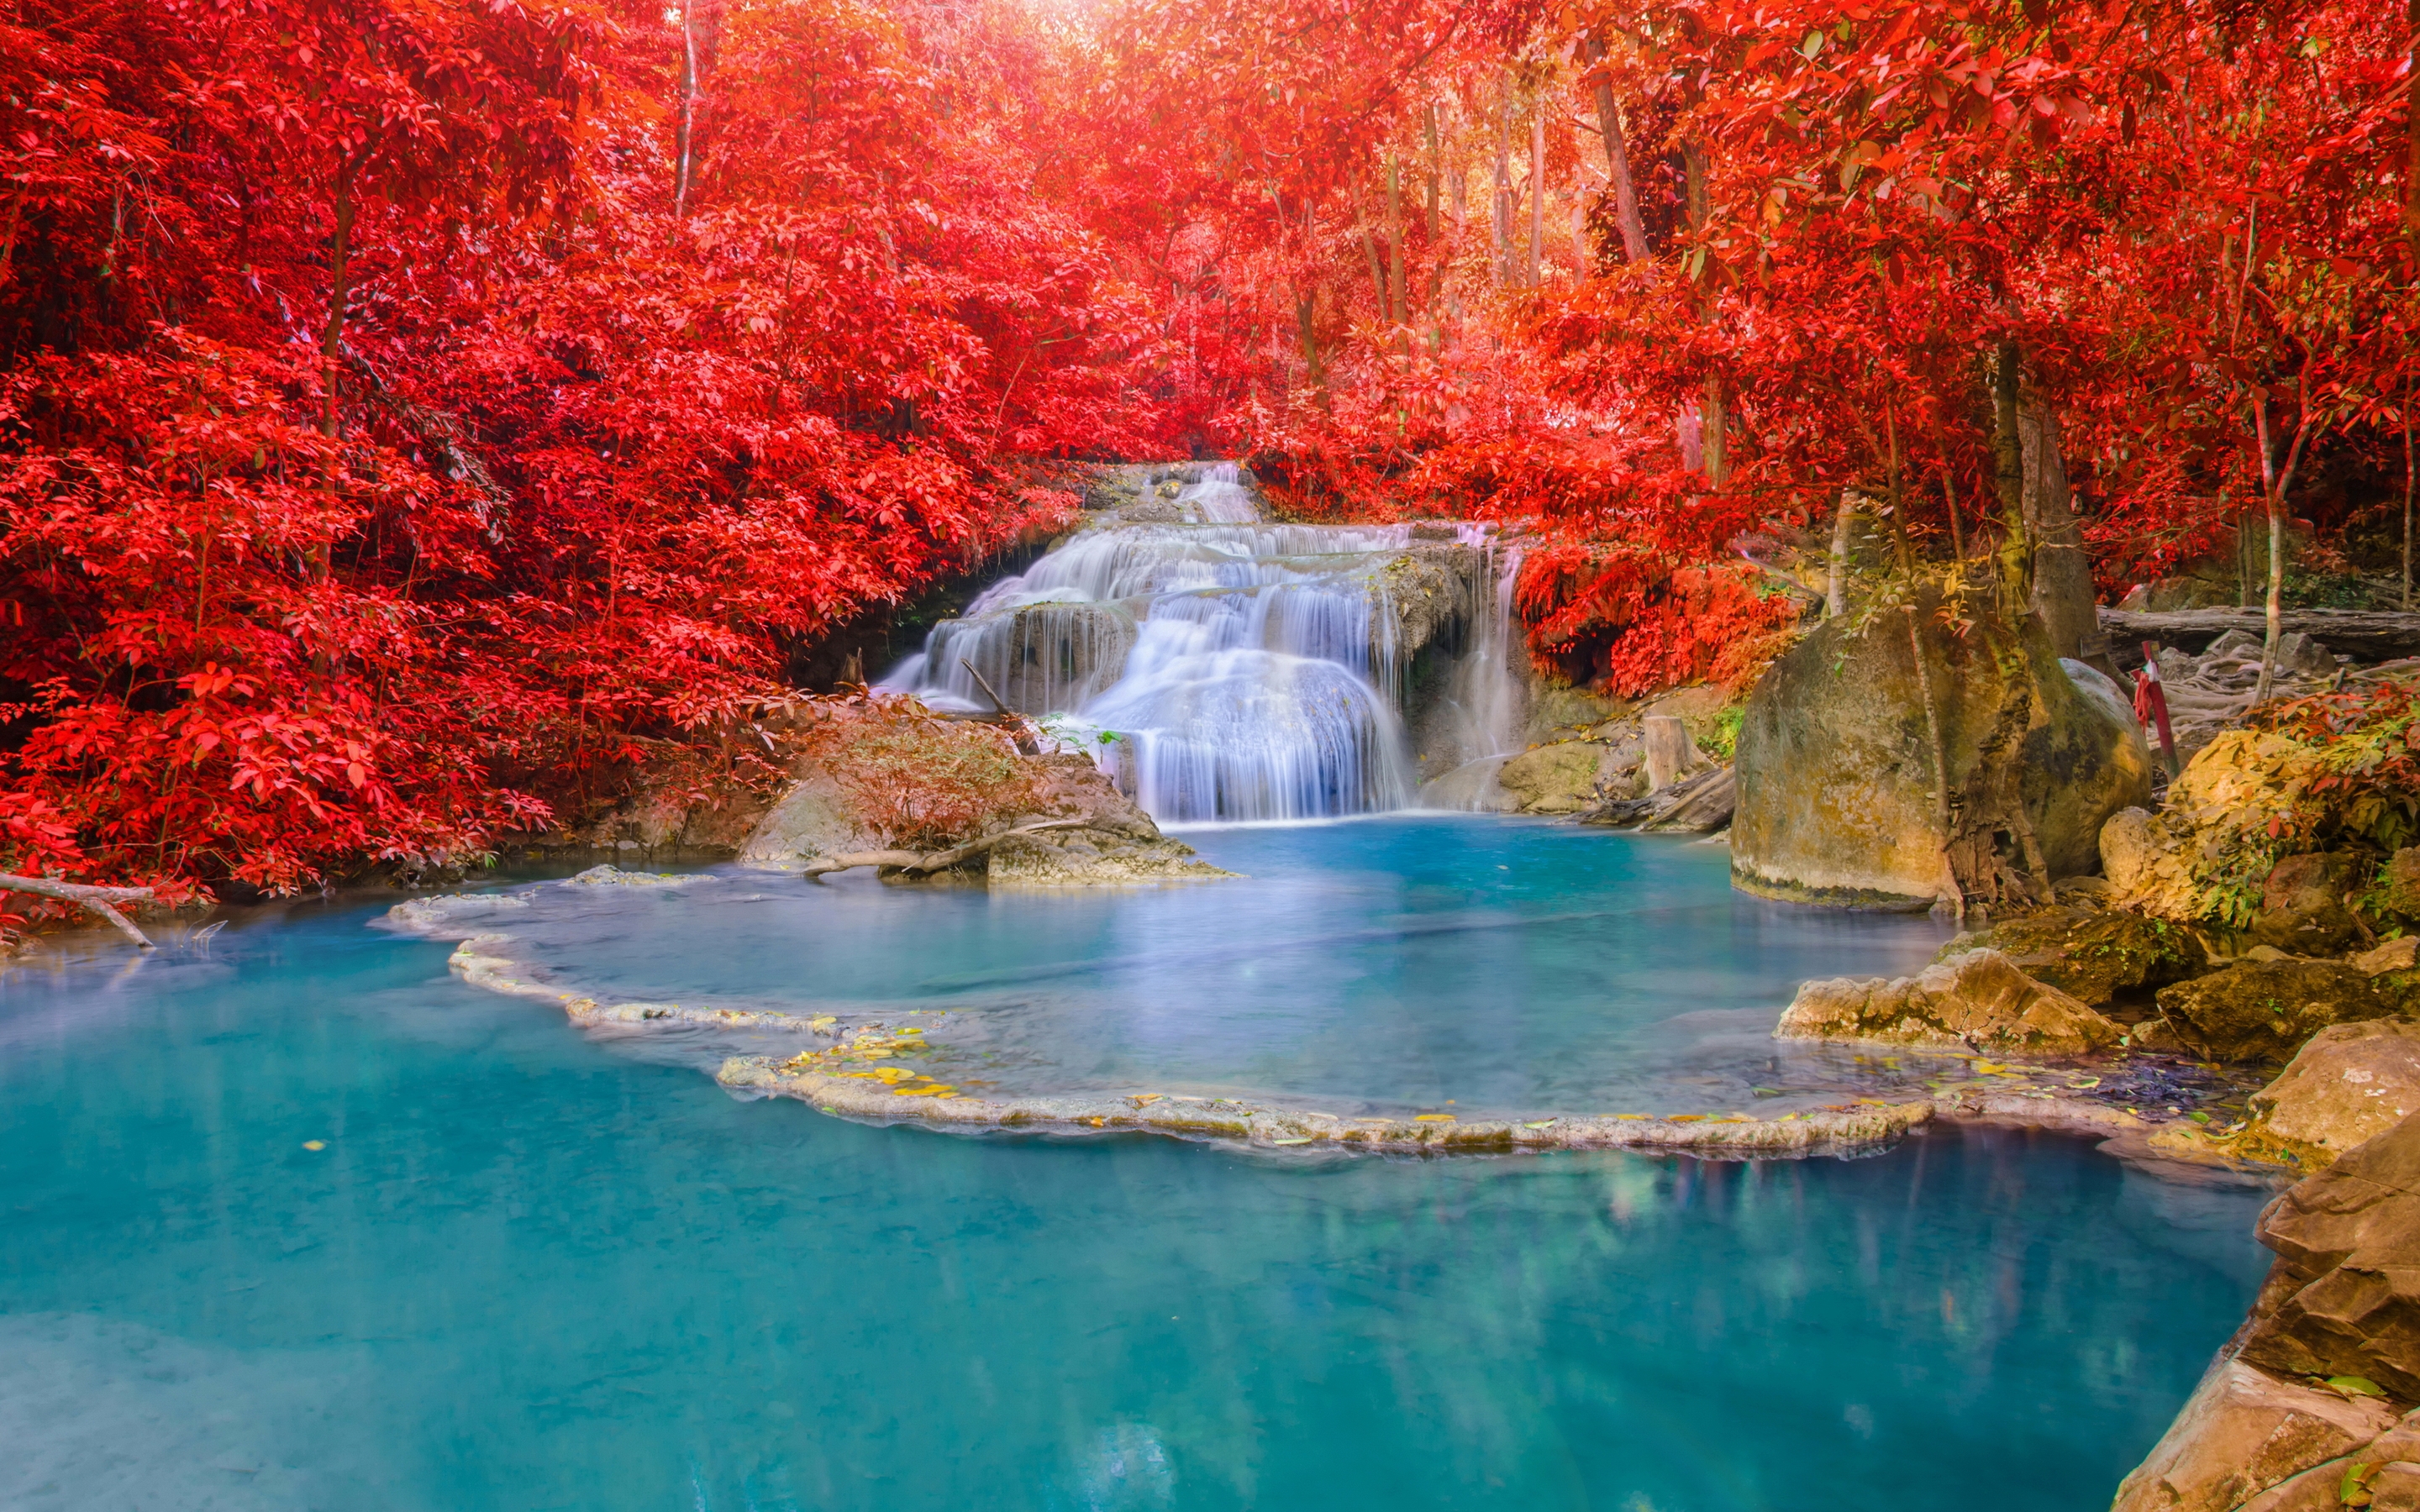 Картинка: Водопад, озеро, вода, деревья, красные, листва, осень, лес, камни